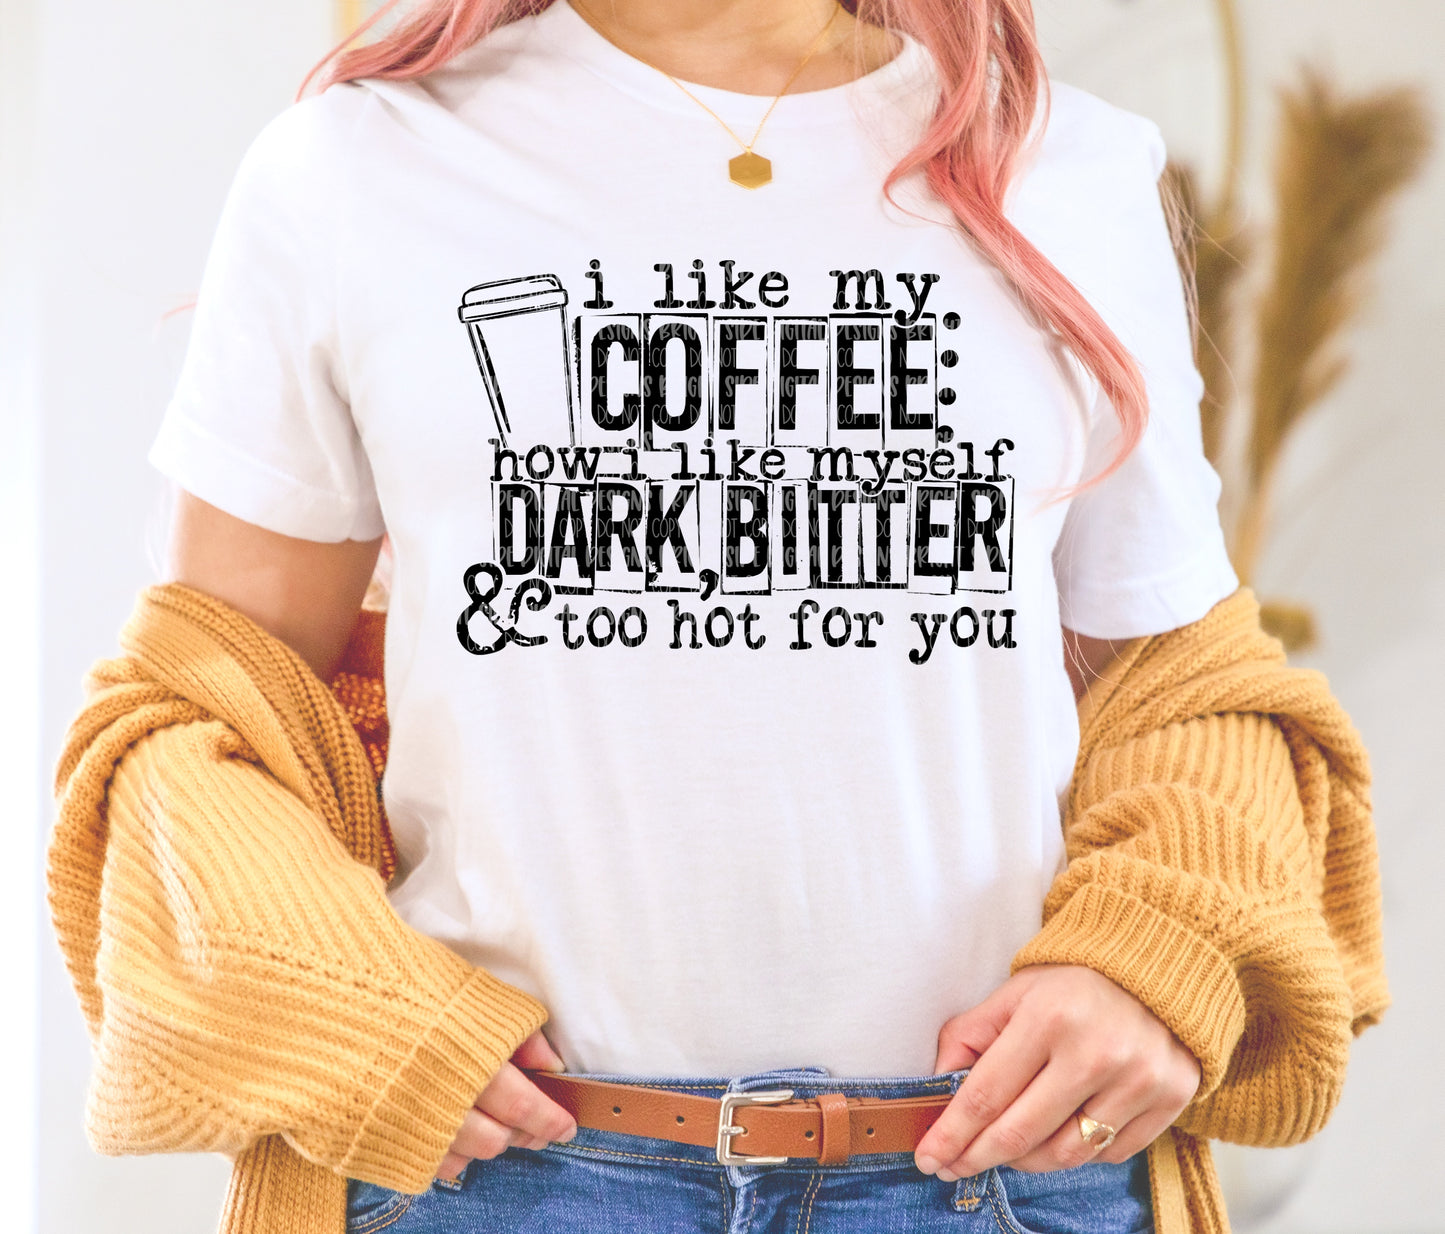 I like my coffee how I like myself. Dark, bitter & too hot for you